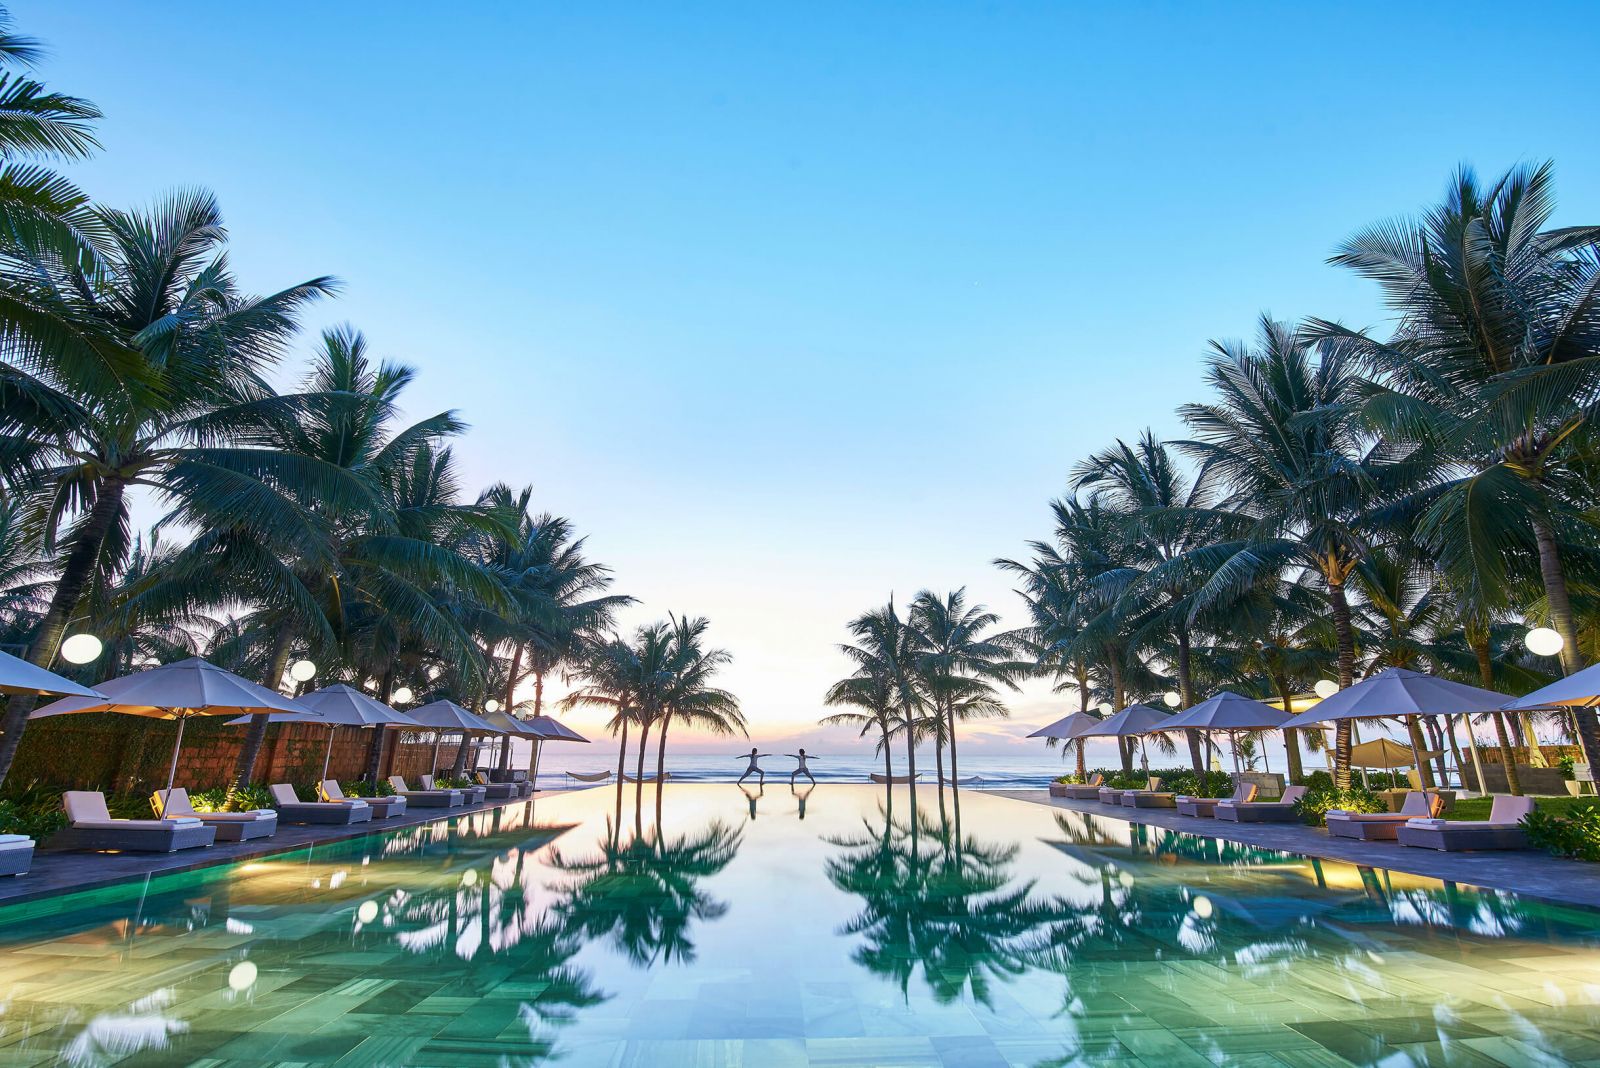  Hồ bơi tuyệt đẹp này nằm tại Fusion Maia Resort tại Đà Nẵng